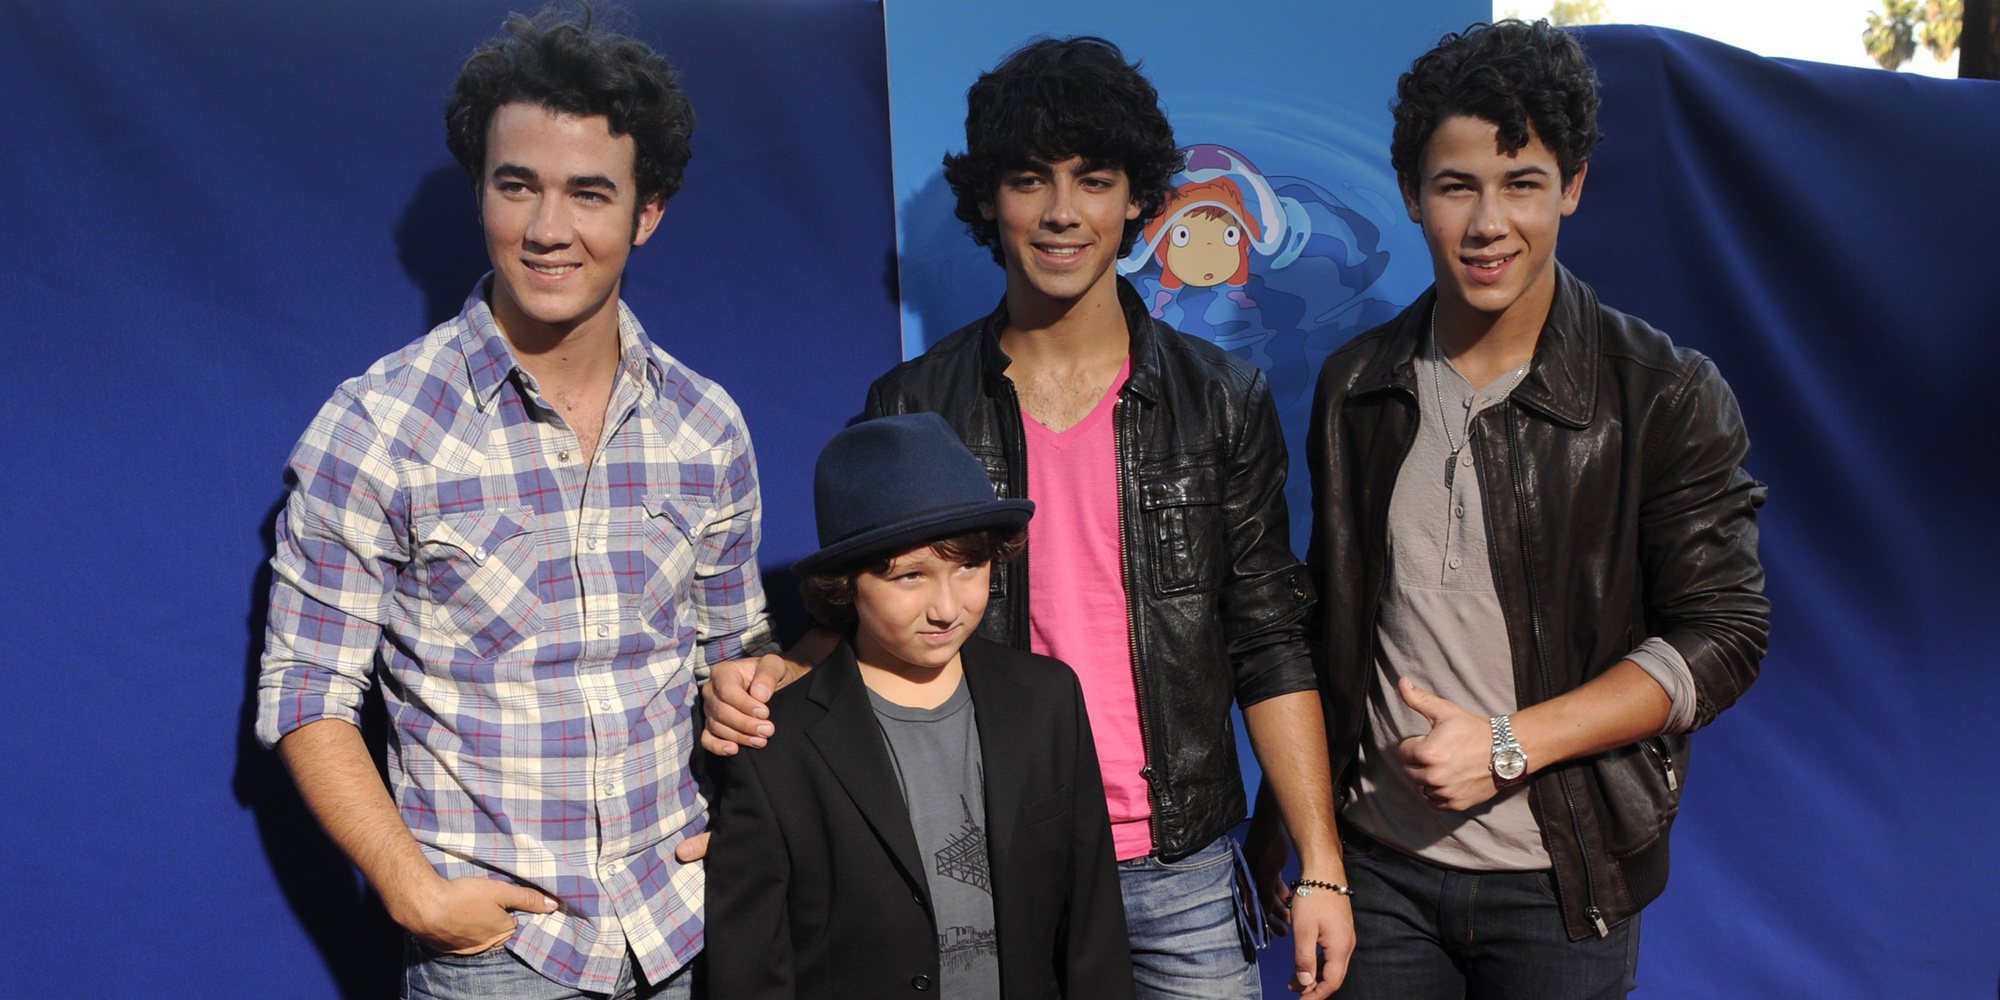 Fama, música y éxito: Así son y así se llevan Kevin, Nick, Joe y Frankie, los Jonas Brothers